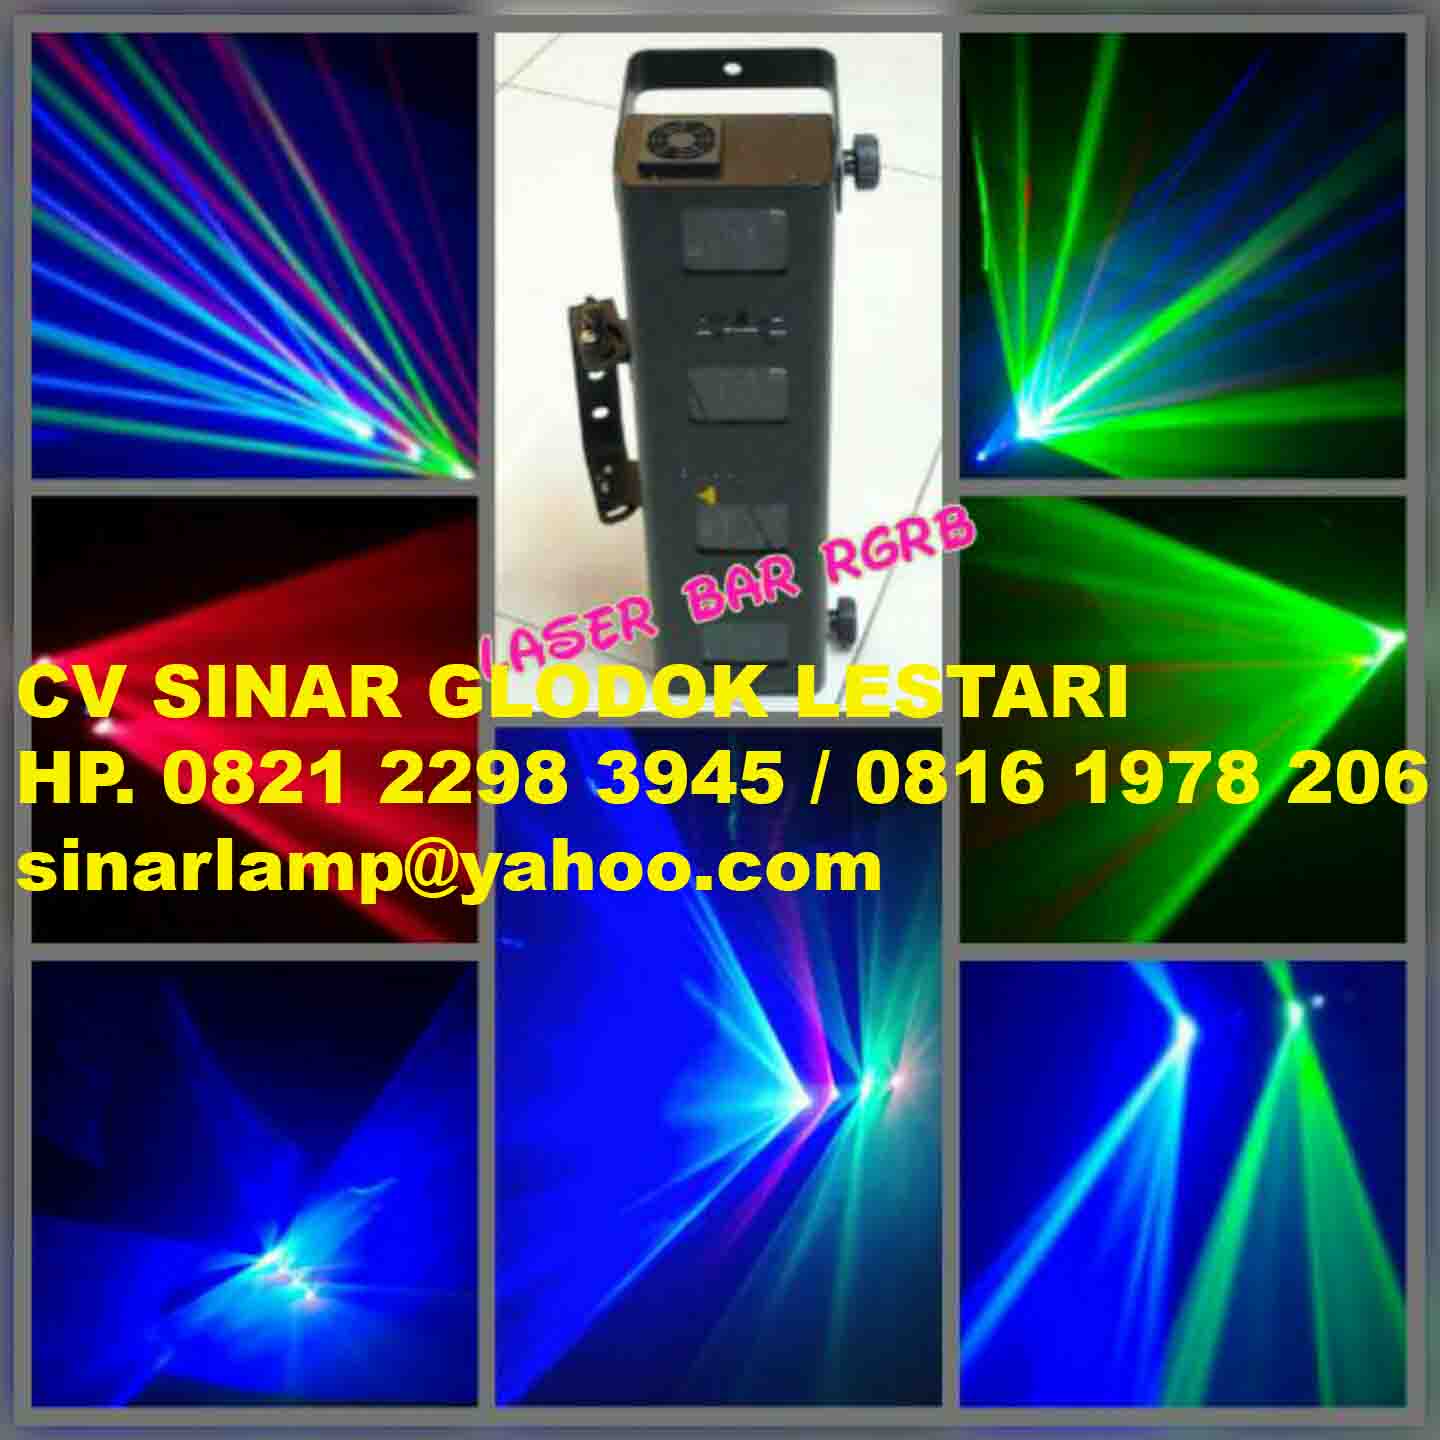 Lampu Laser Bar RGRB